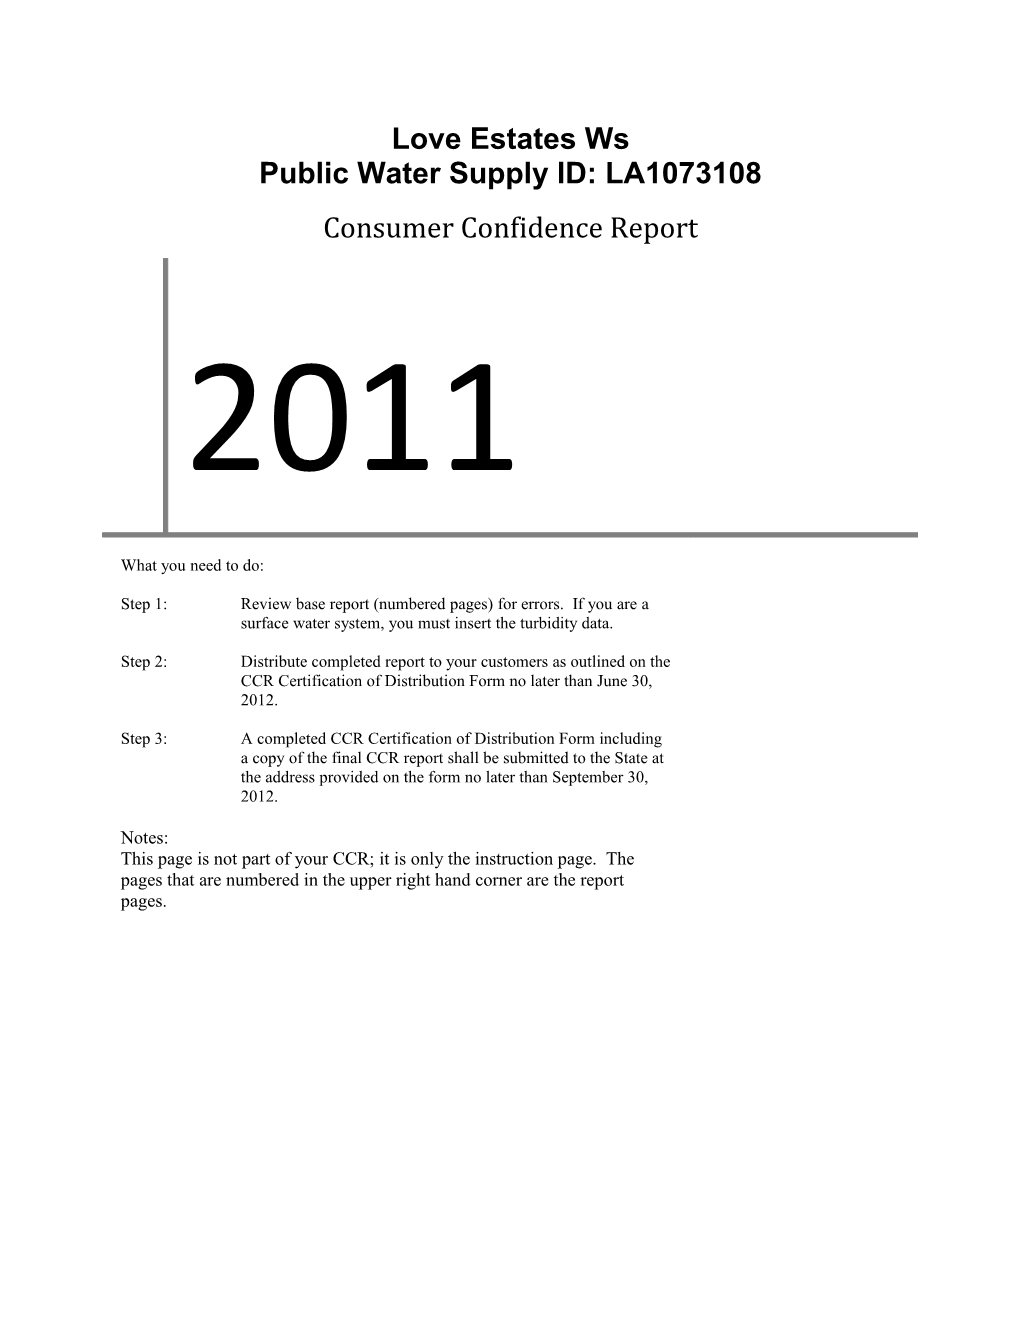 Public Water Supply ID: LA1073108